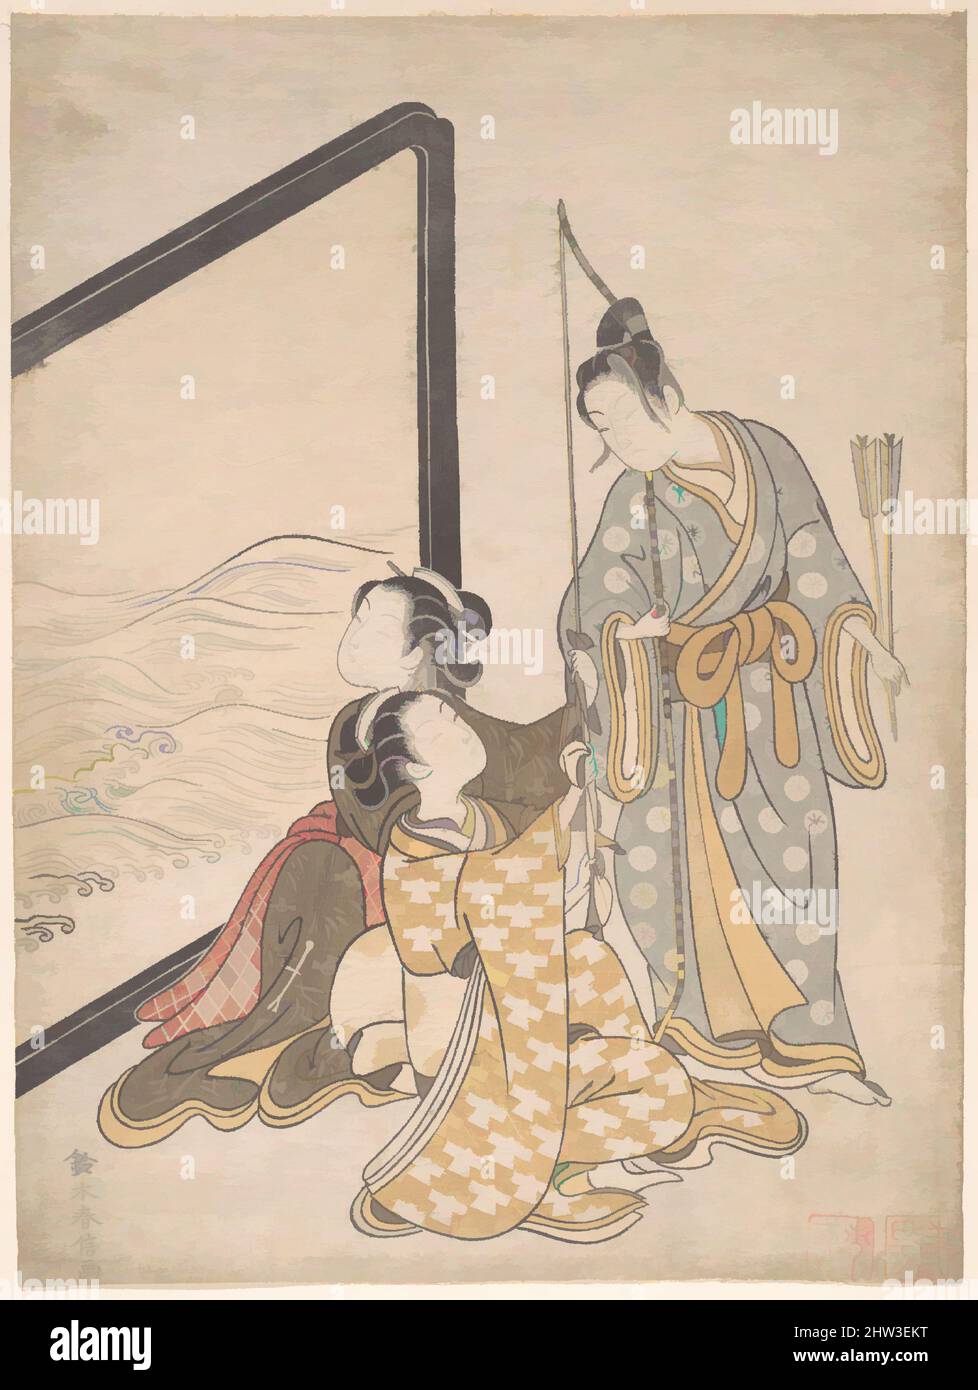 Art inspiré par la parodie de Minamoto no Tametomo, époque Edo (1615–1868), 1765, Japon, imprimé polychrome sur bois; encre et couleur sur papier, 10 1/2 x 7 7/8 cm (26,7 x 20 cm), tirages, Suzuki Harunobu (japonais, 1725–1770), dans le calendrier photo, la date cyclique pour 1765 est cachée. Japon, œuvres classiques modernisées par Artotop avec un peu de modernité. Formes, couleur et valeur, impact visuel accrocheur sur l'art émotions par la liberté d'œuvres d'art d'une manière contemporaine. Un message intemporel qui cherche une nouvelle direction créative. Artistes qui se tournent vers le support numérique et créent le NFT Artotop Banque D'Images